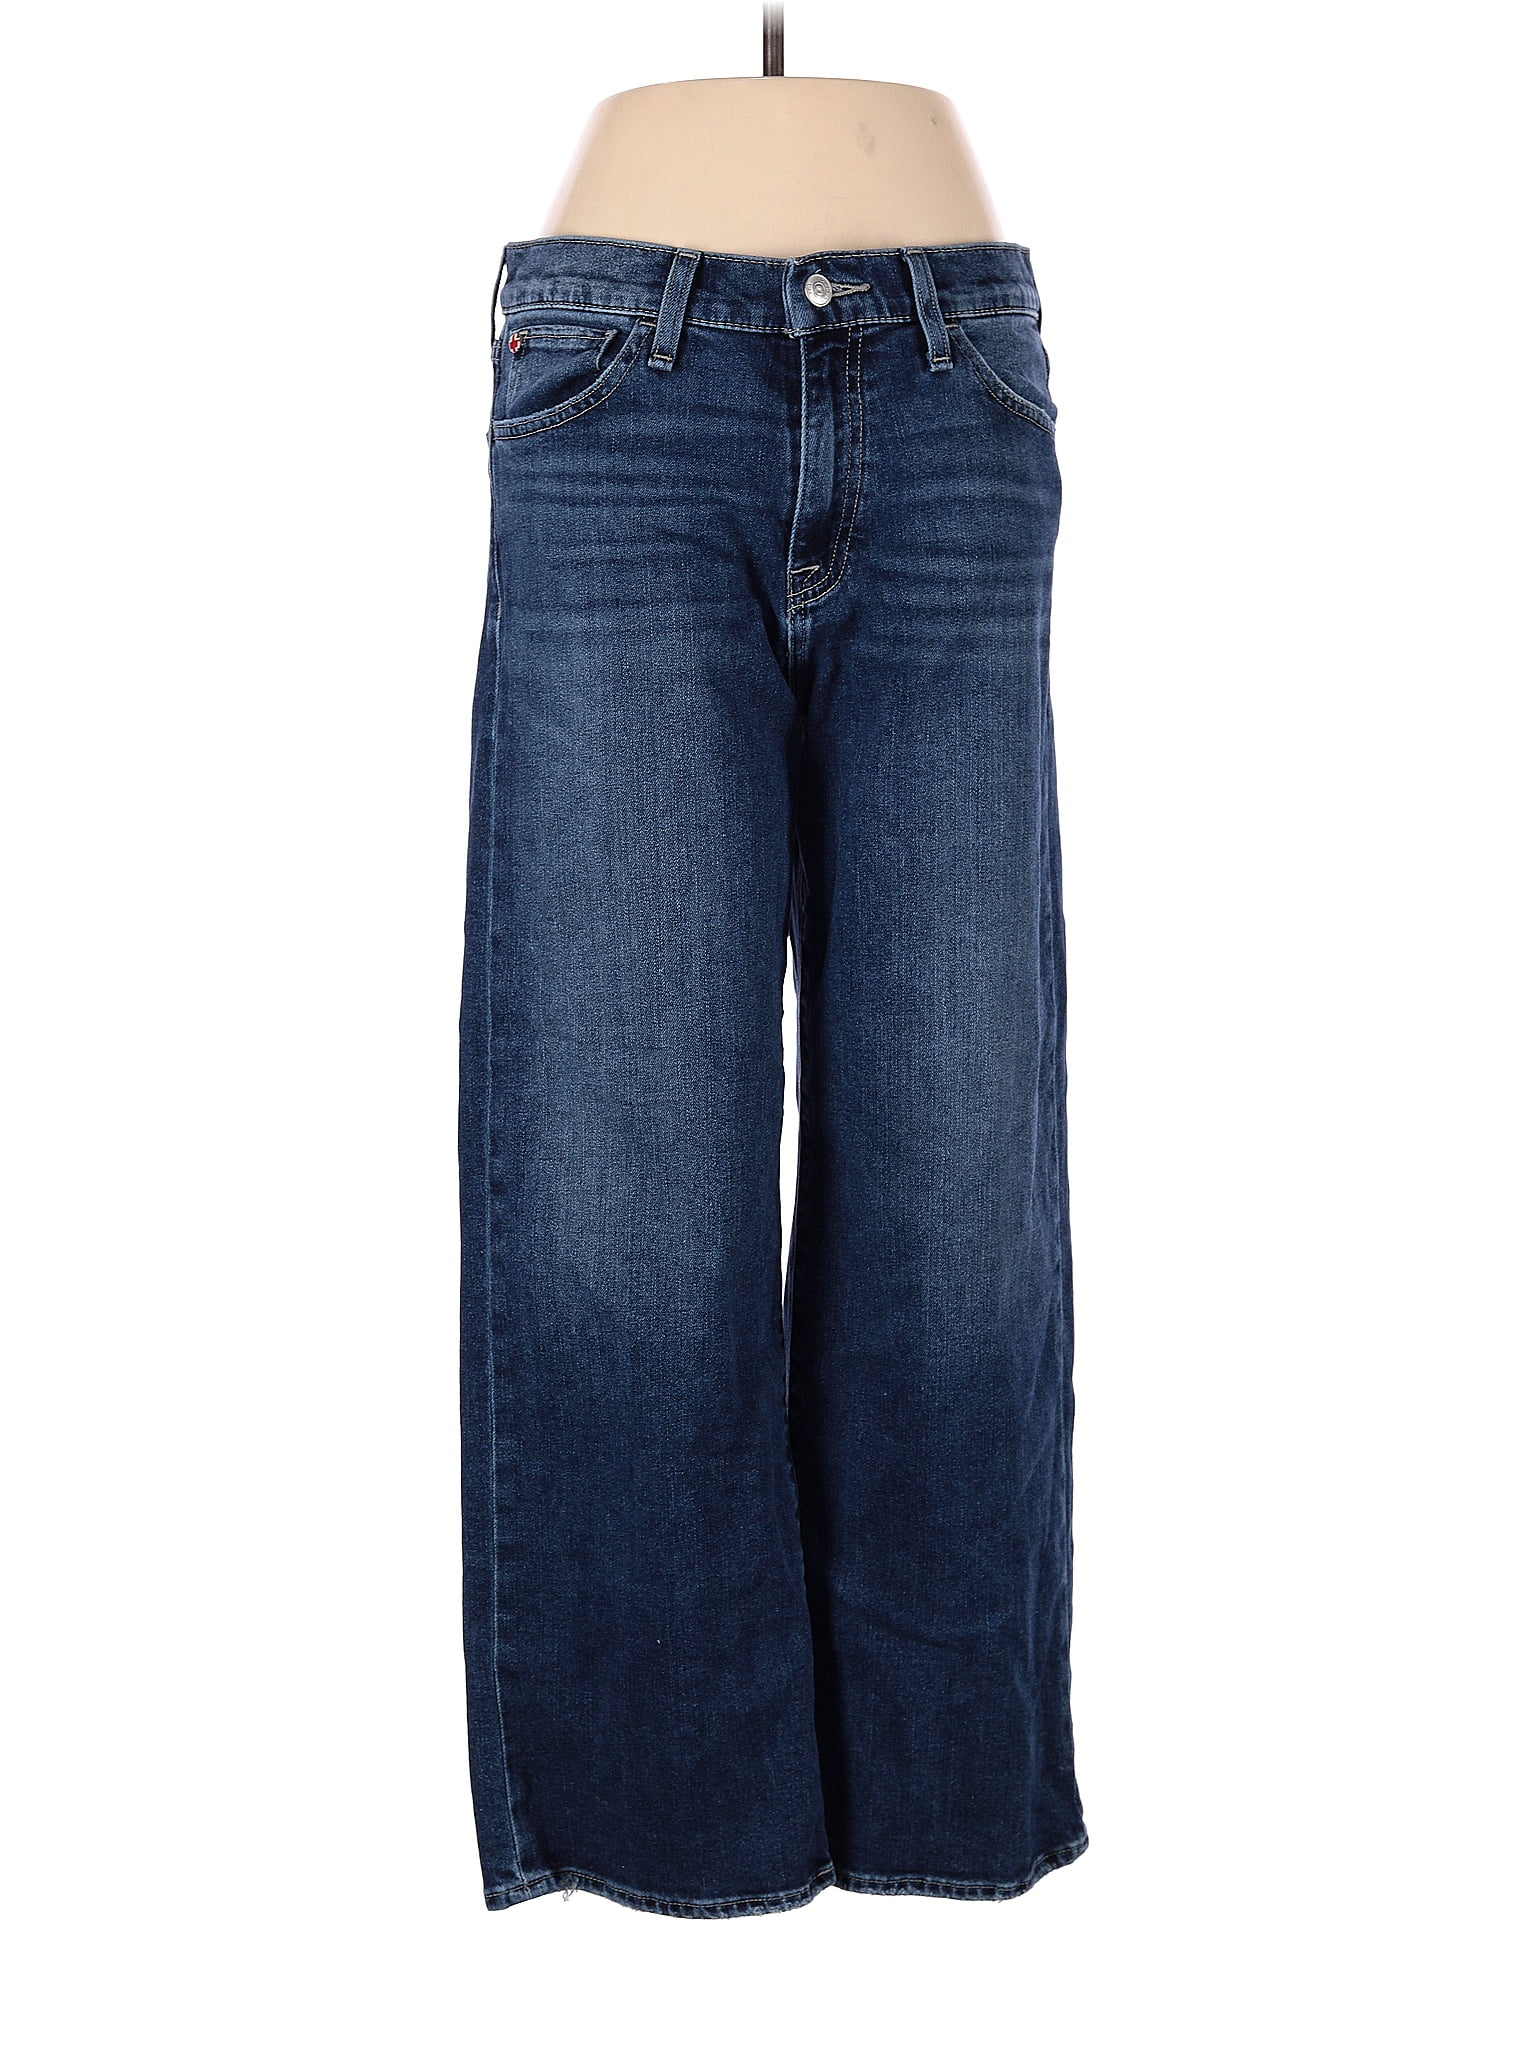 Hudson Jeans Solid Blue Jeans 29 Waist - 78% off | thredUP